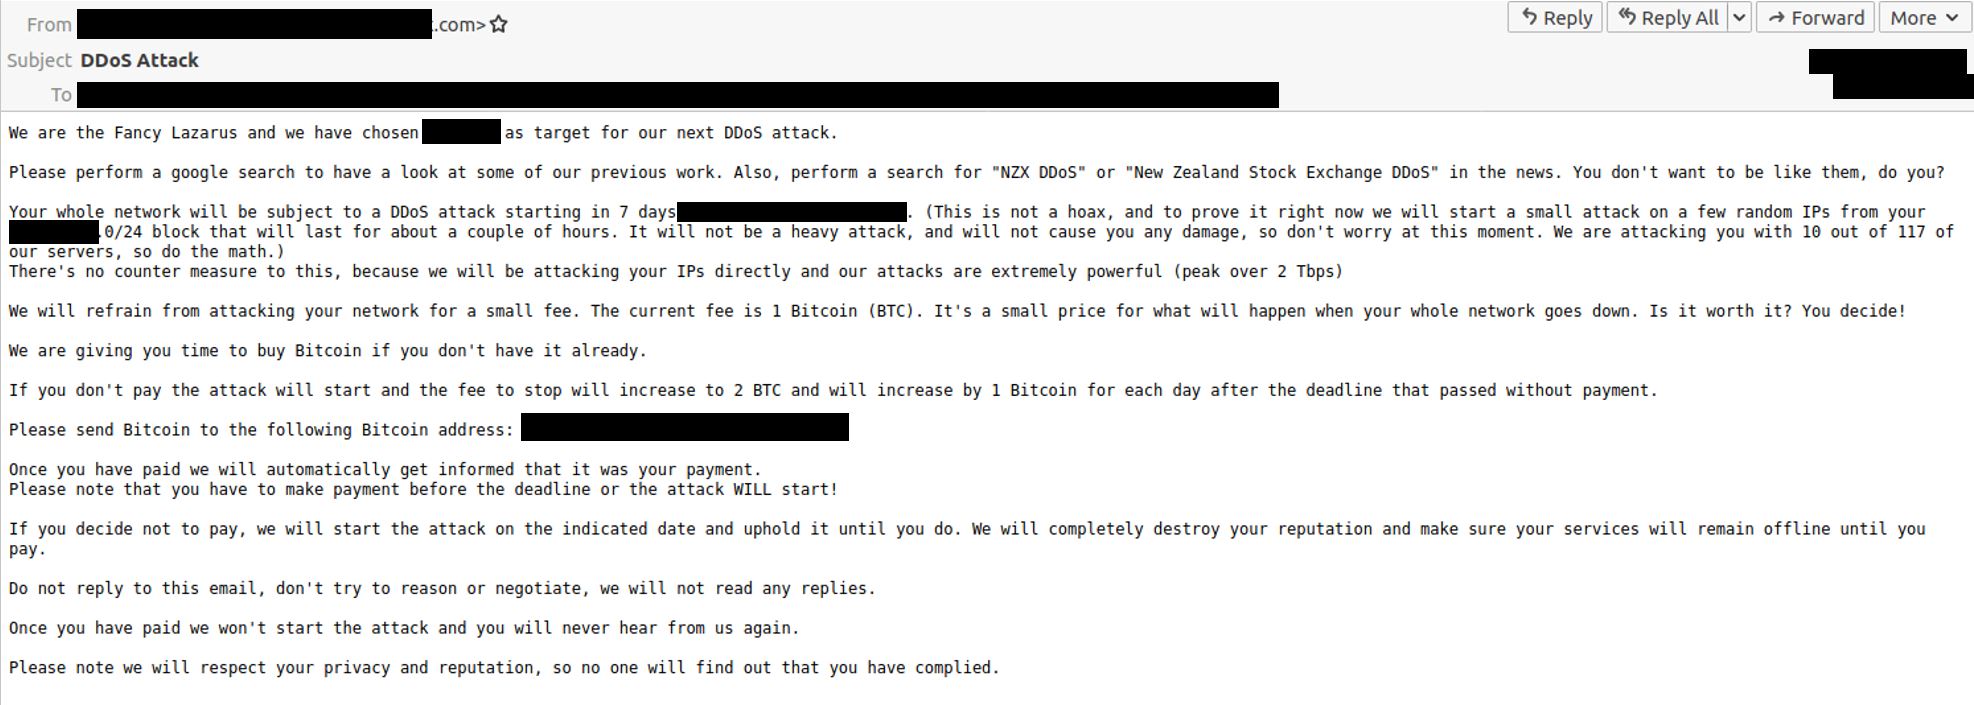 Attacco DDoS: lettera di estorsione 